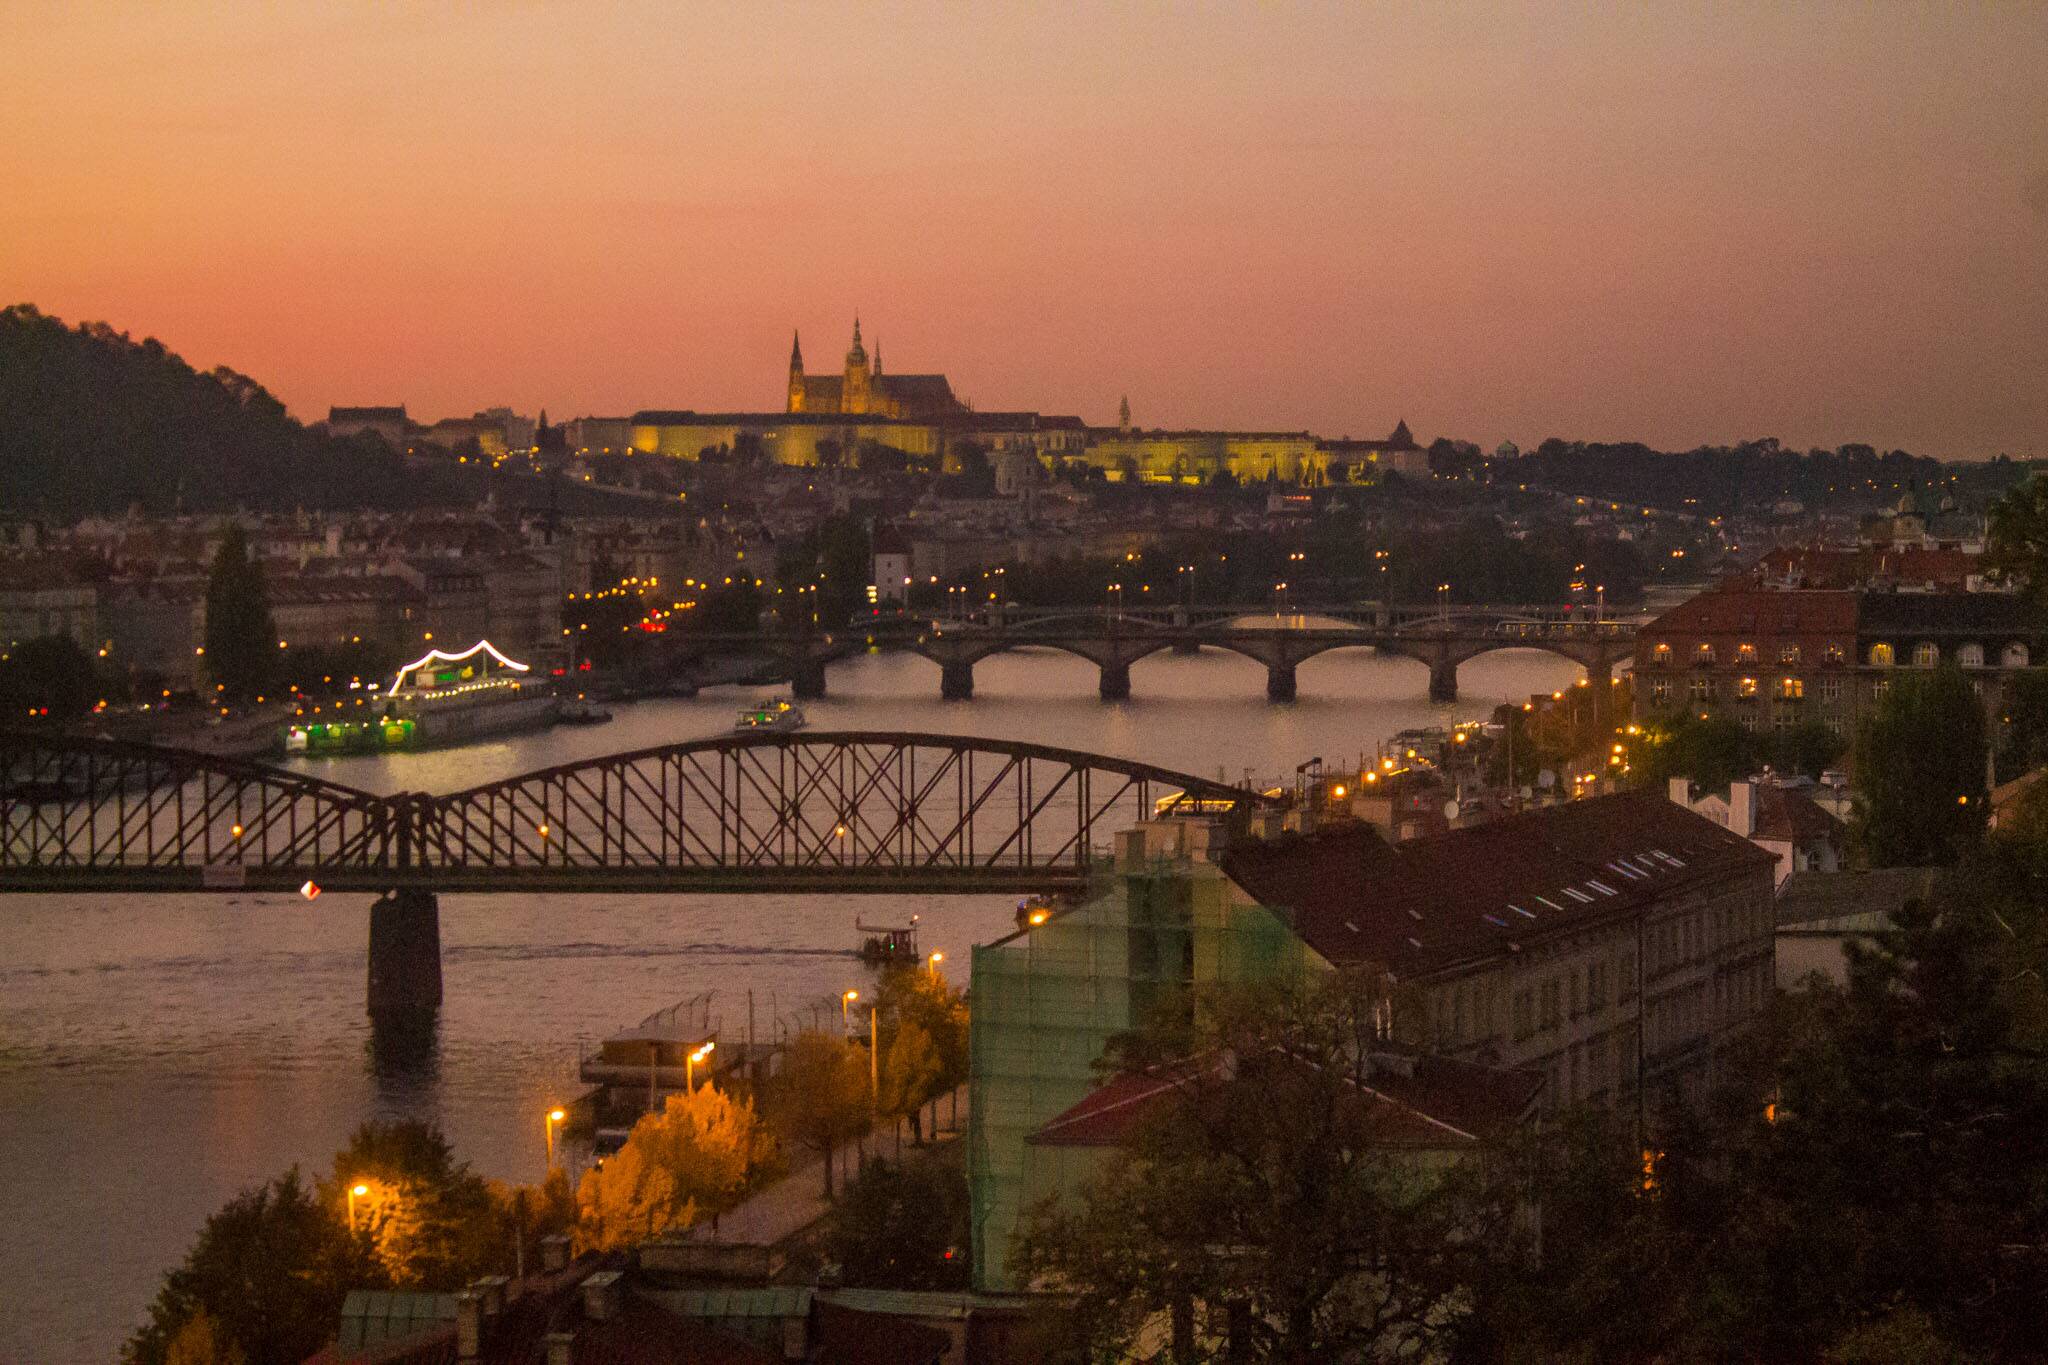 Pôr do sol maravilhoso em Praga, visto deste o mirante em Vyšehrad | Foto: Bruno/@naproadavida - três dias em Praga com €50